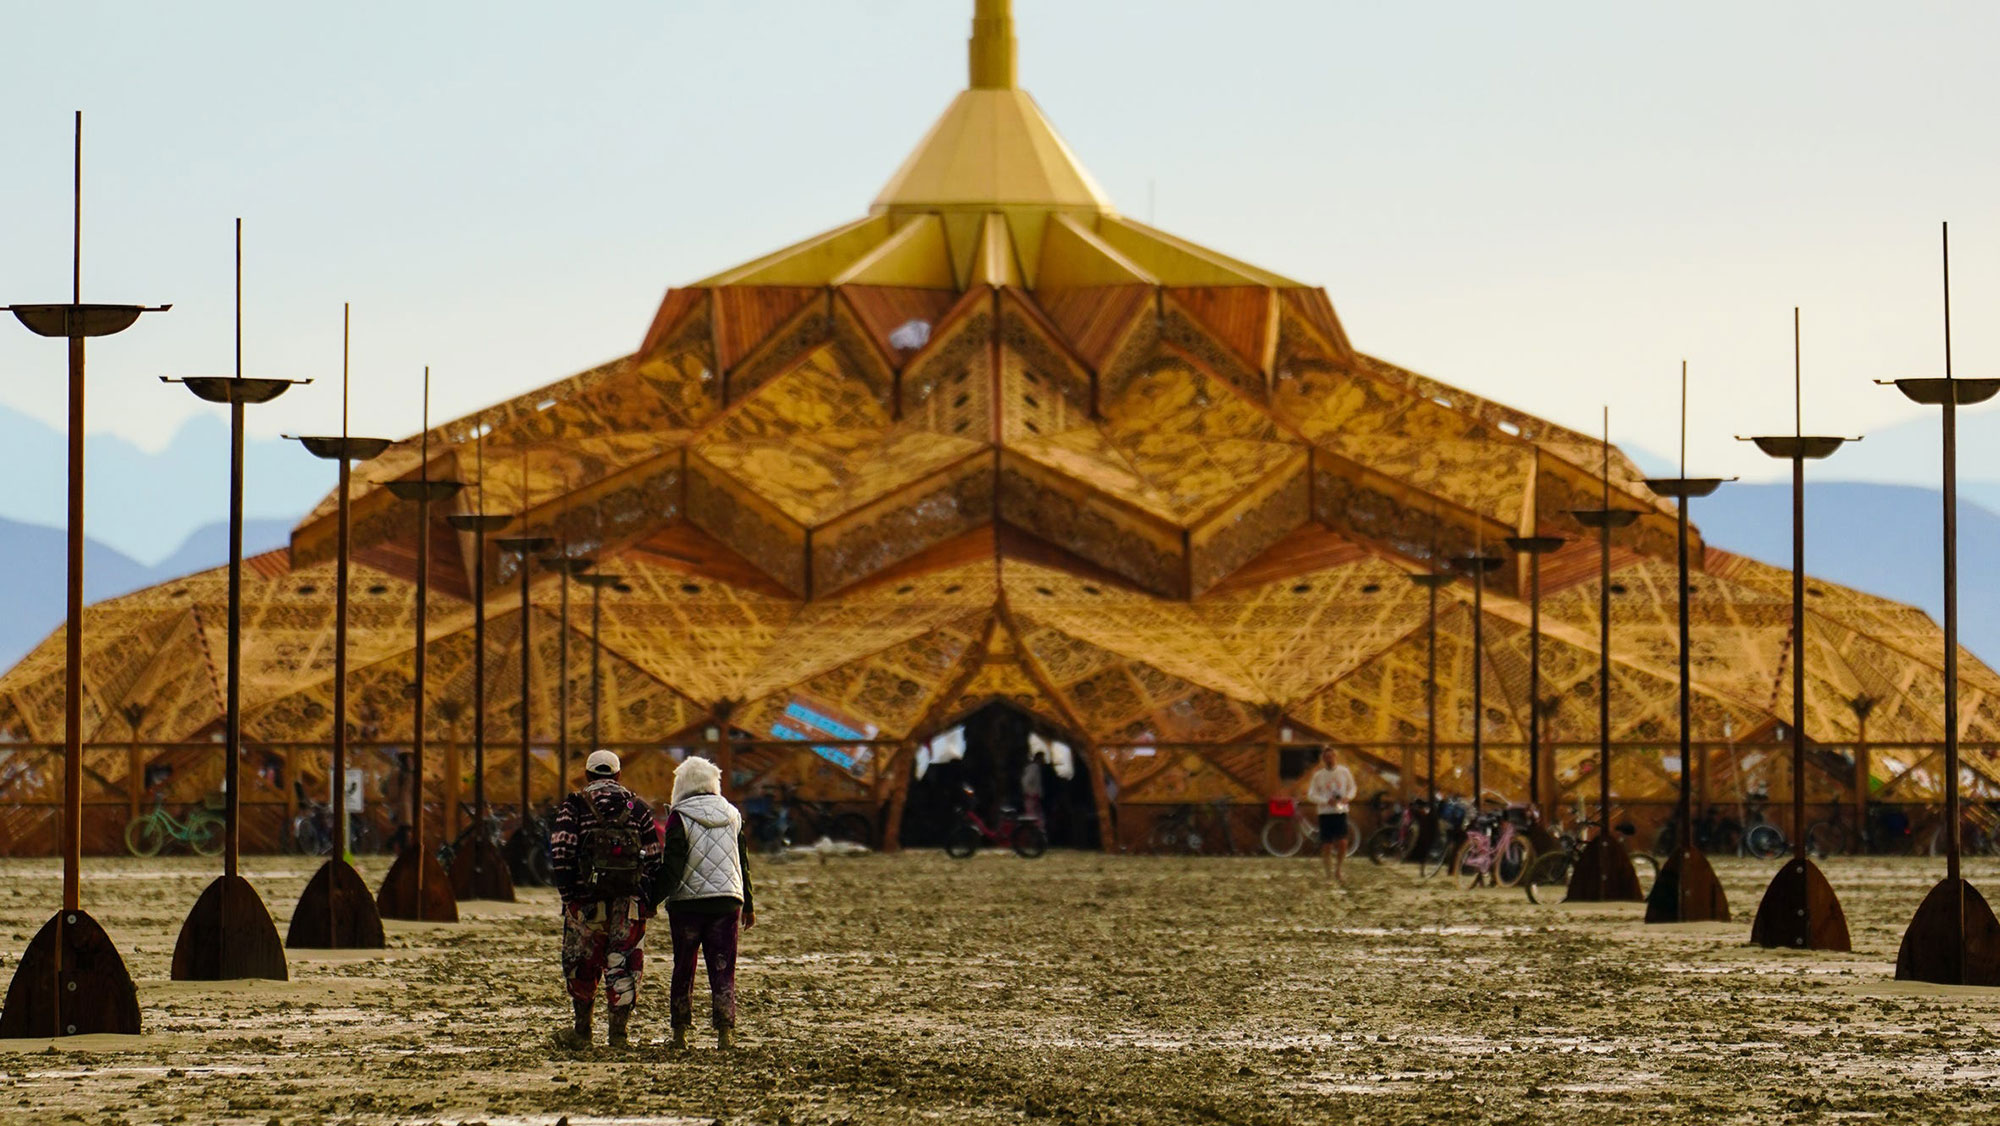 Festival attendees walk through mud at Burning Man on Saturday, September 2. 